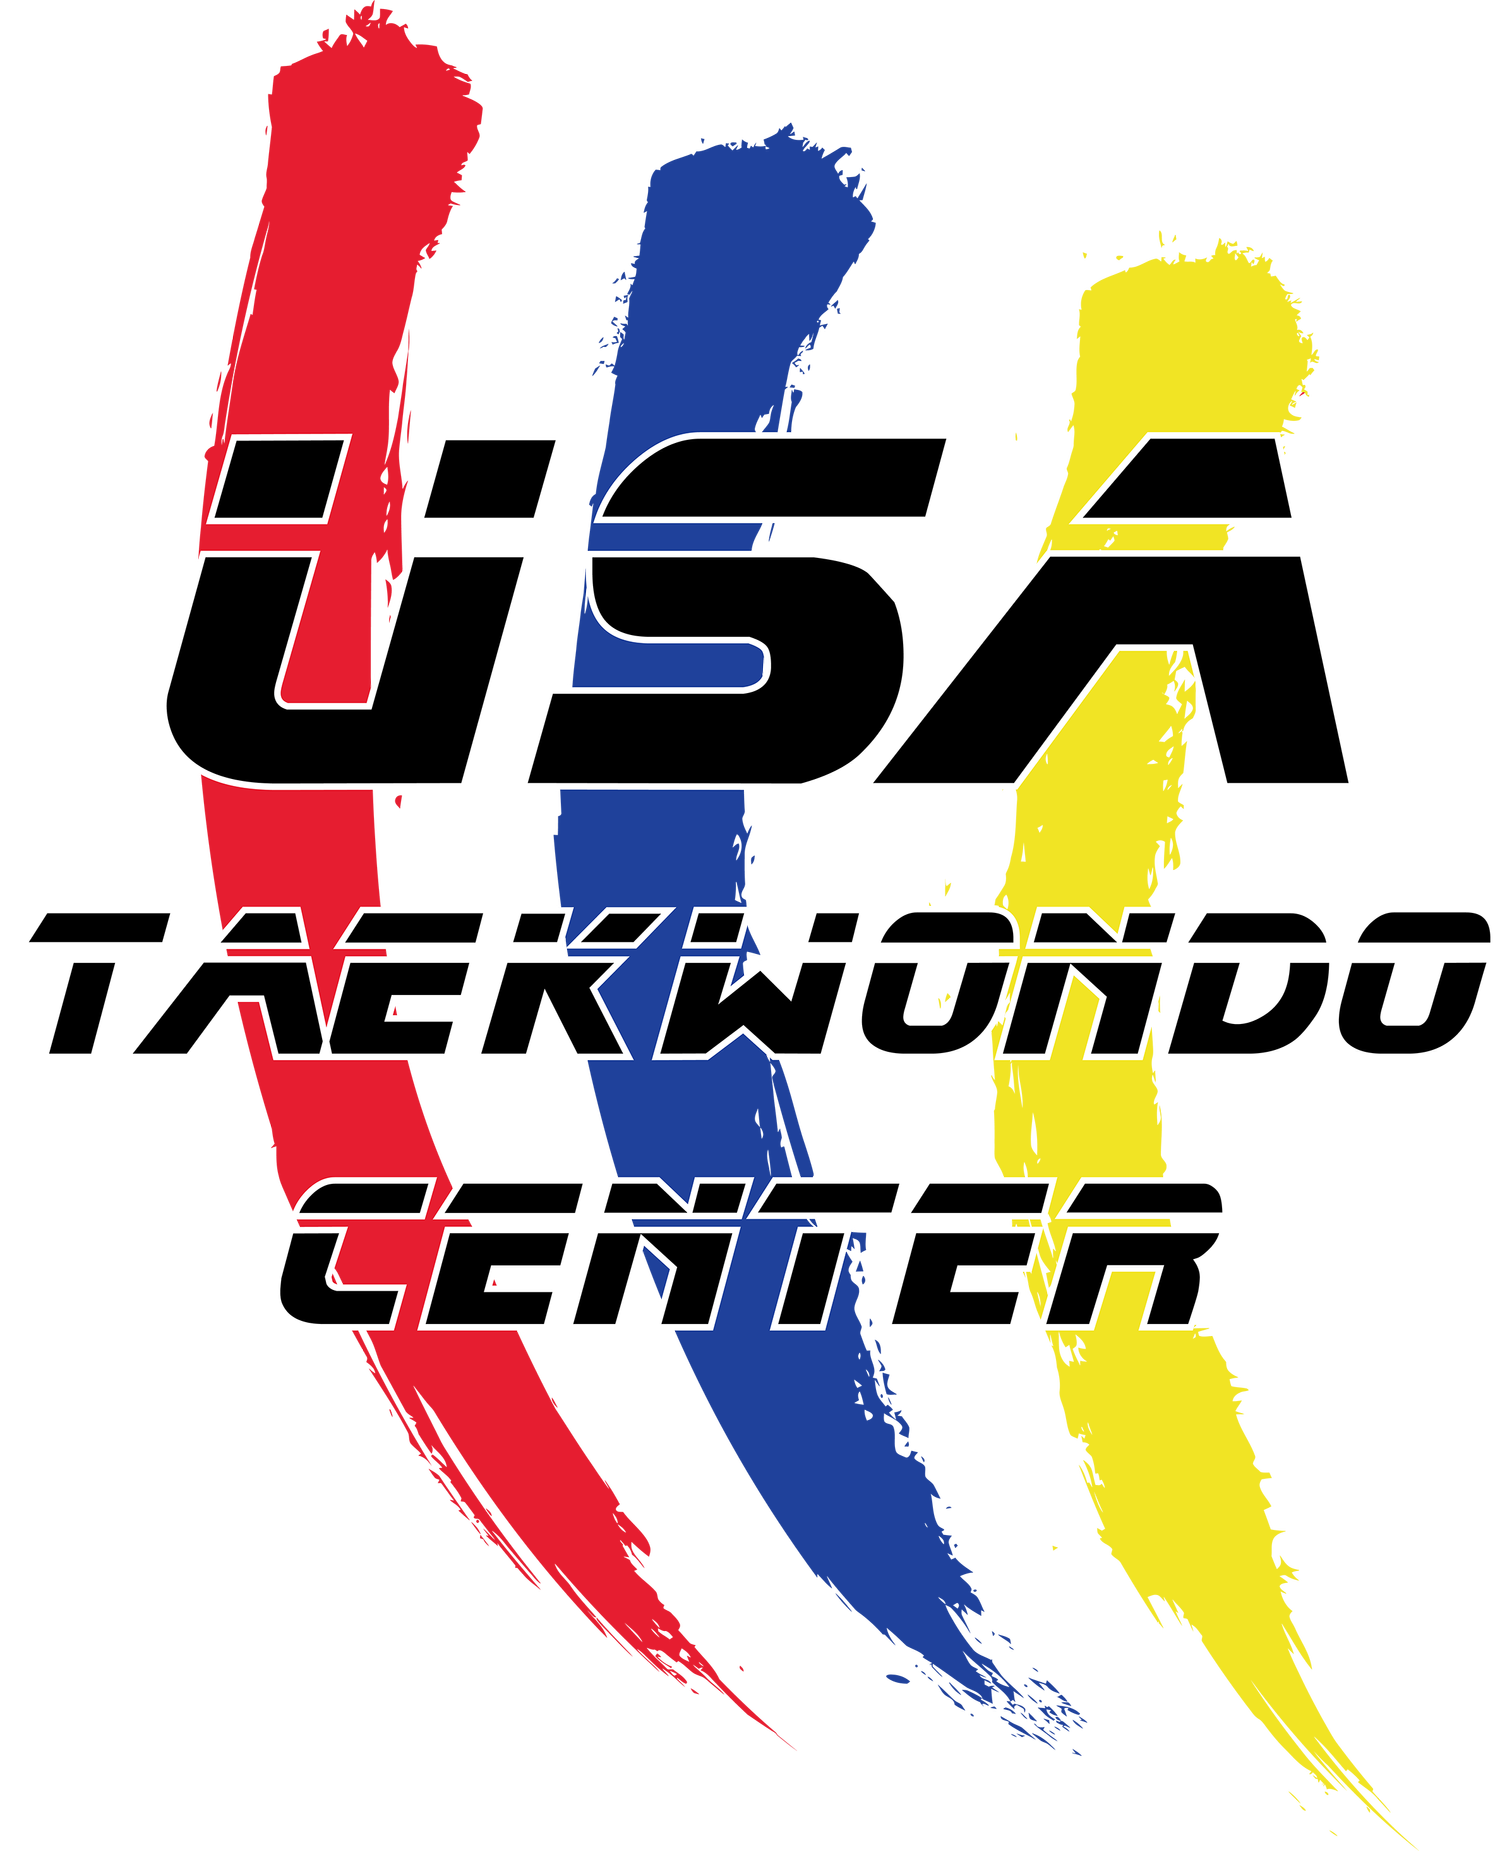 USA Taekwondo Centers